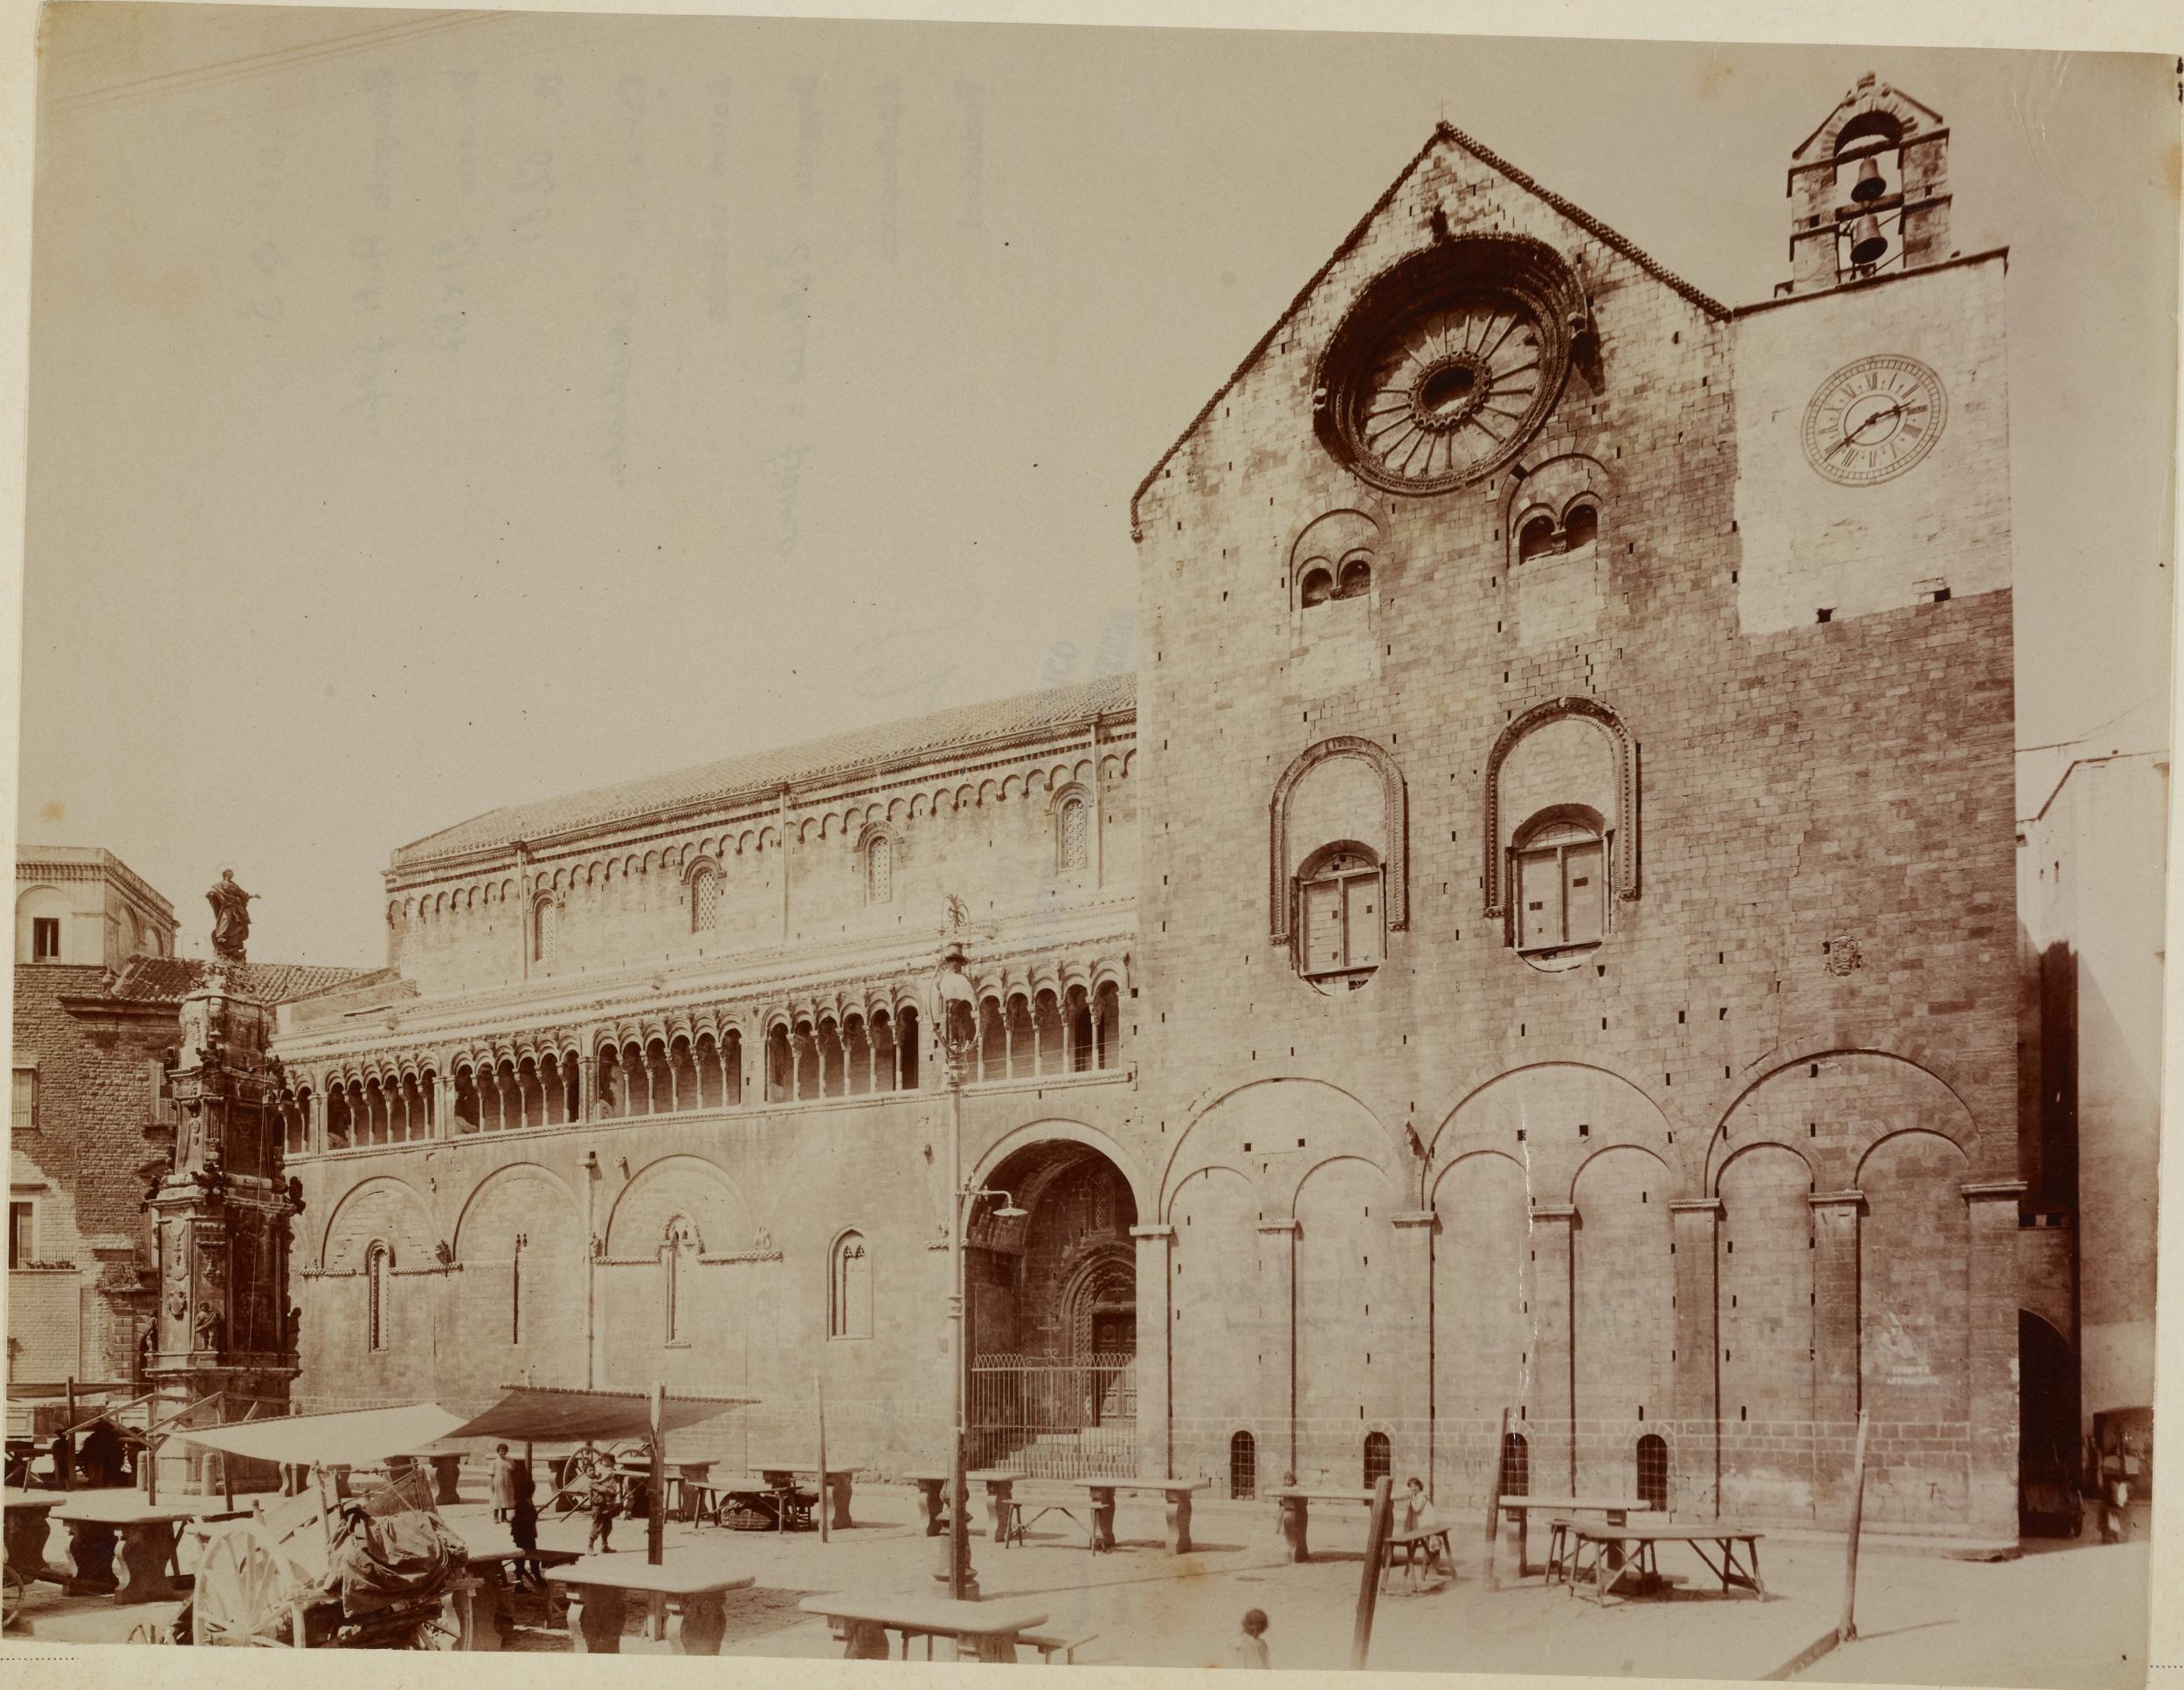 Fotografo non identificato, Bitonto - Cattedrale di S. Valentino, fianco destro,1901-1910, albumina/carta, MPI137819